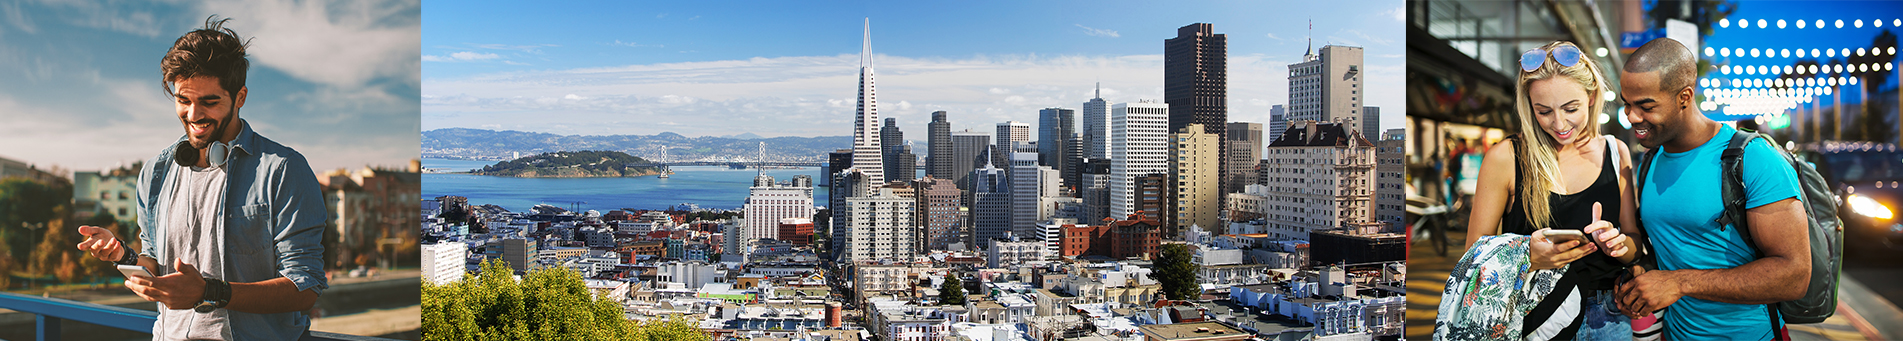 San Francisco citygames app